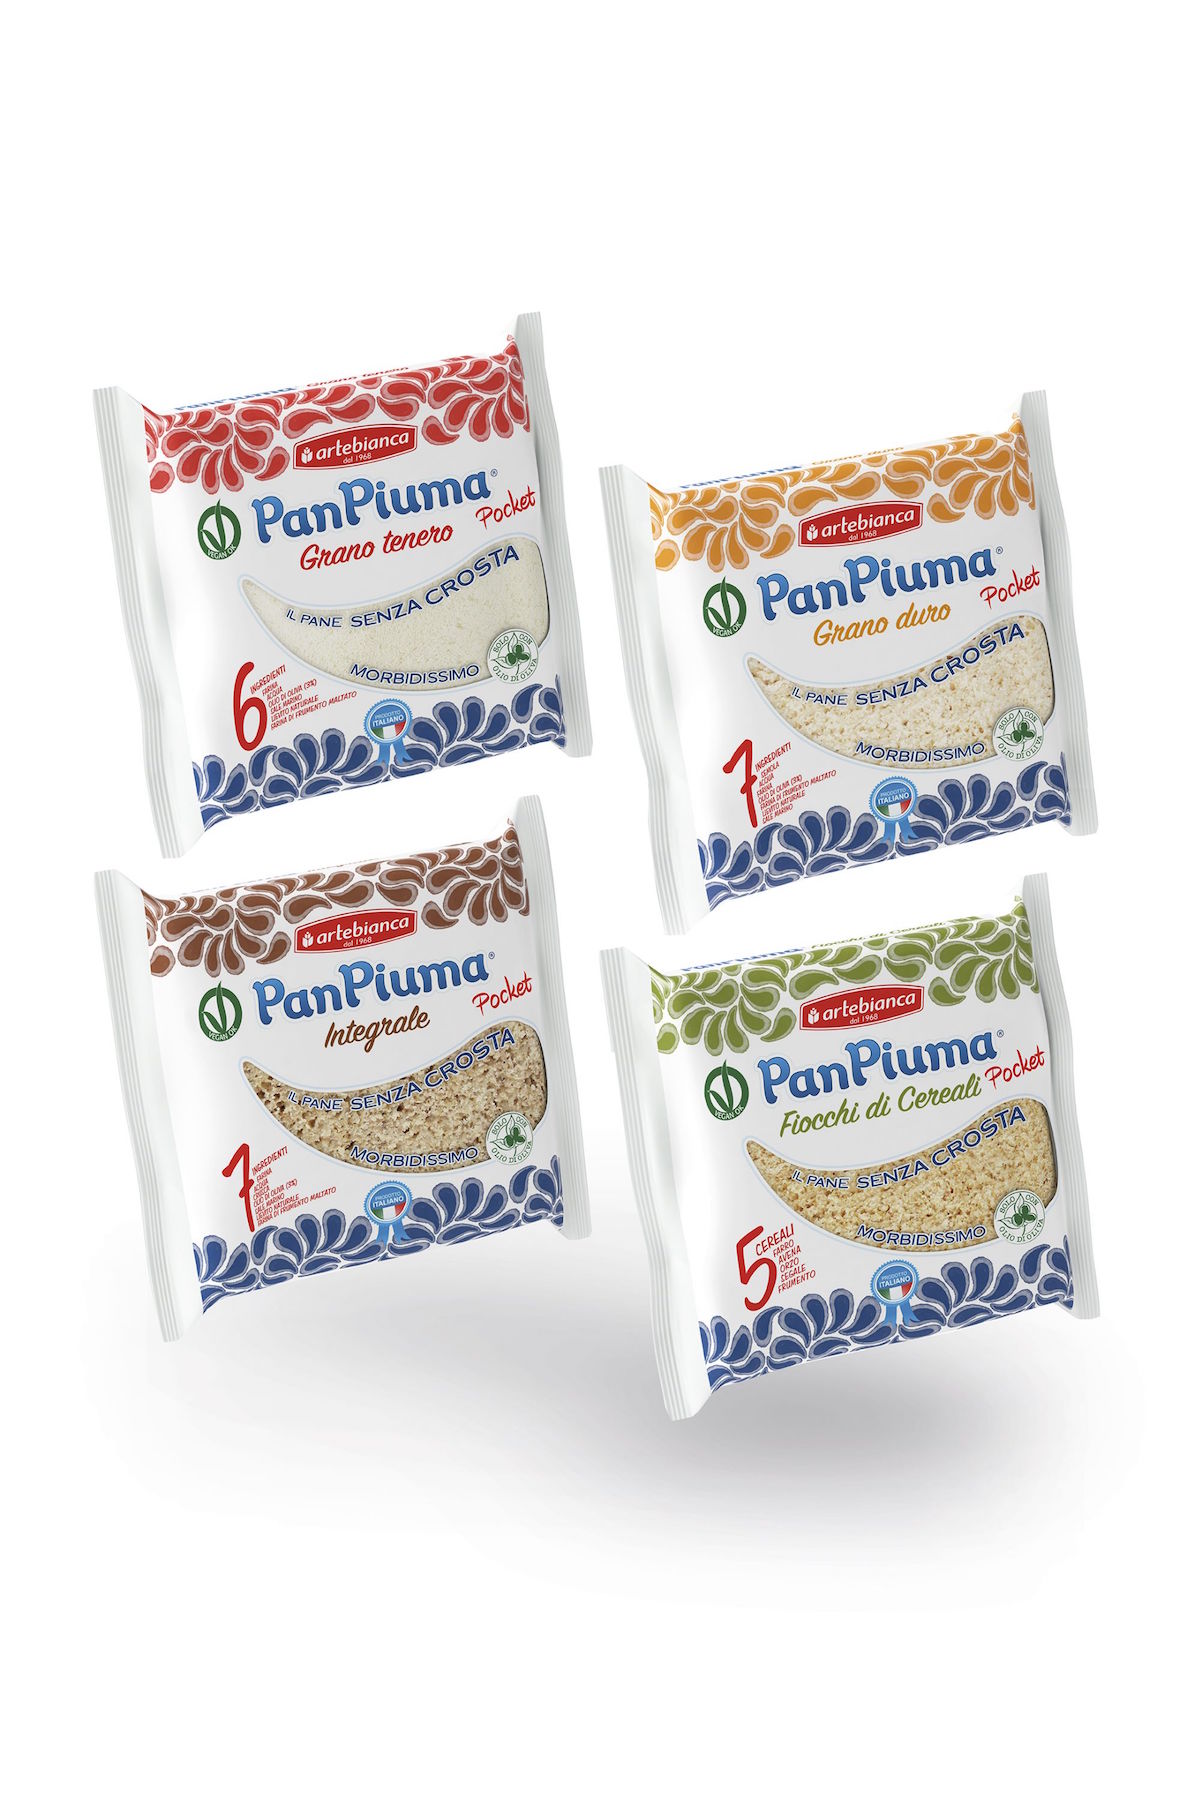 PanPiuma Pocket 150g 02